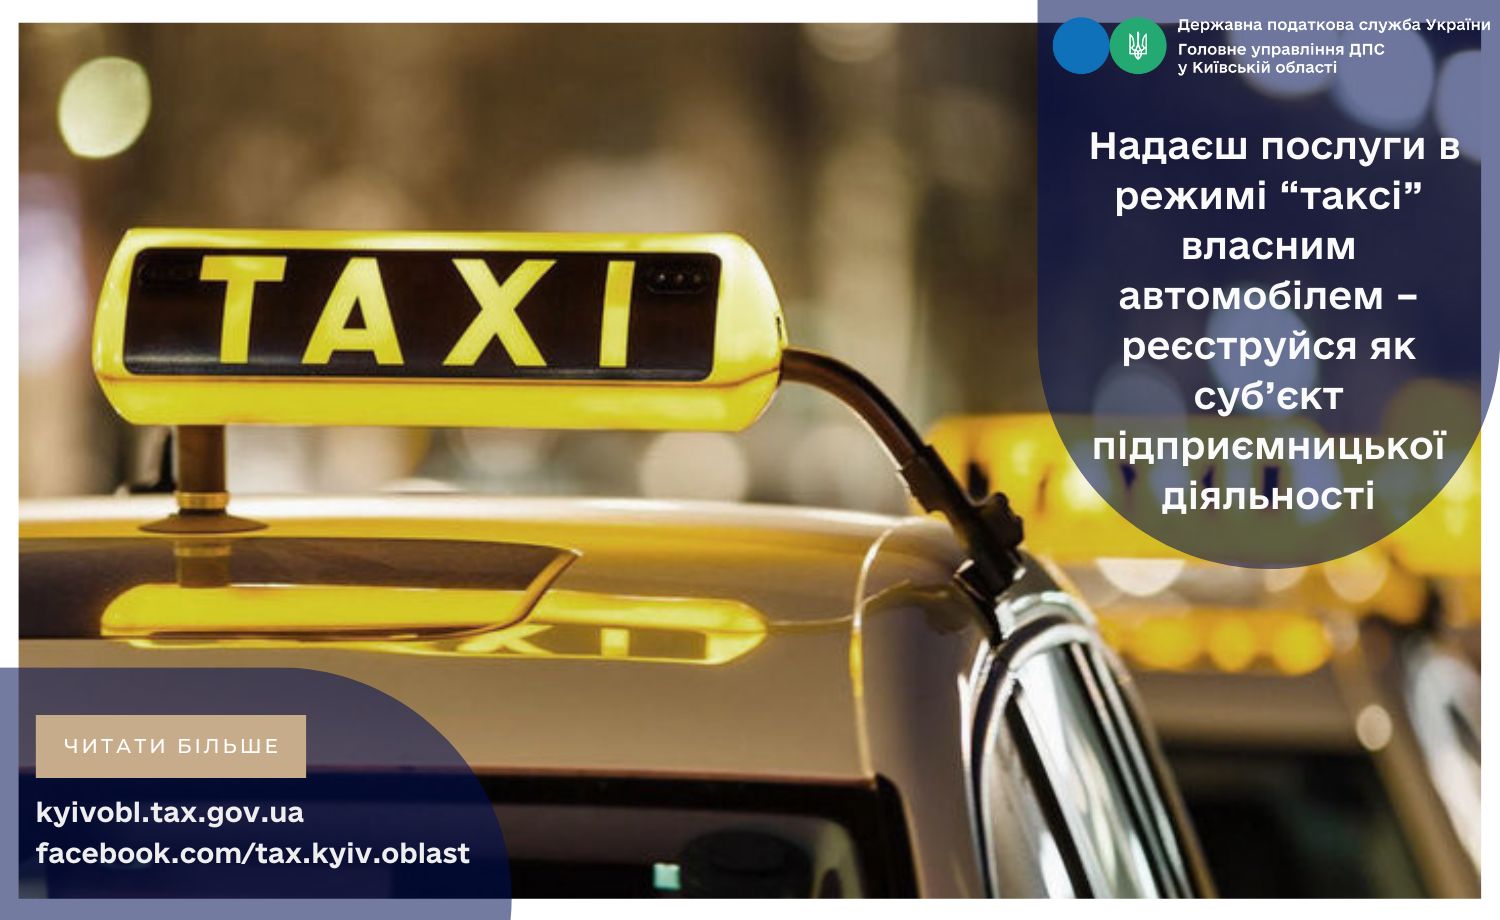 В Украине начали изымать личные автомобили таксистов по требованию Налоговой службы 